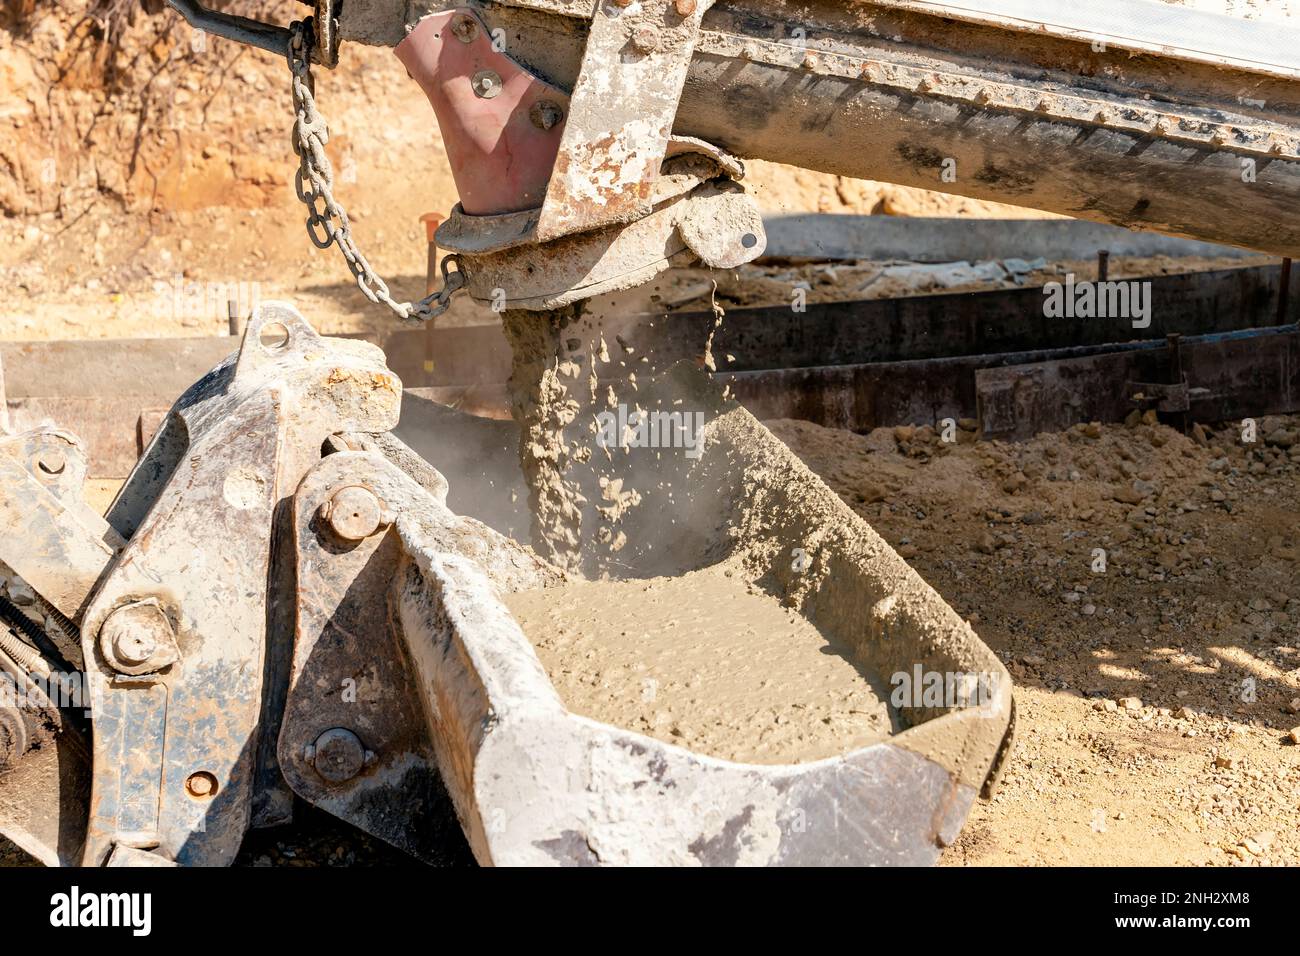 Betoniera per calcestruzzo che versa calcestruzzo fresco umido nella benna degli escavatori in un cantiere edile Foto Stock